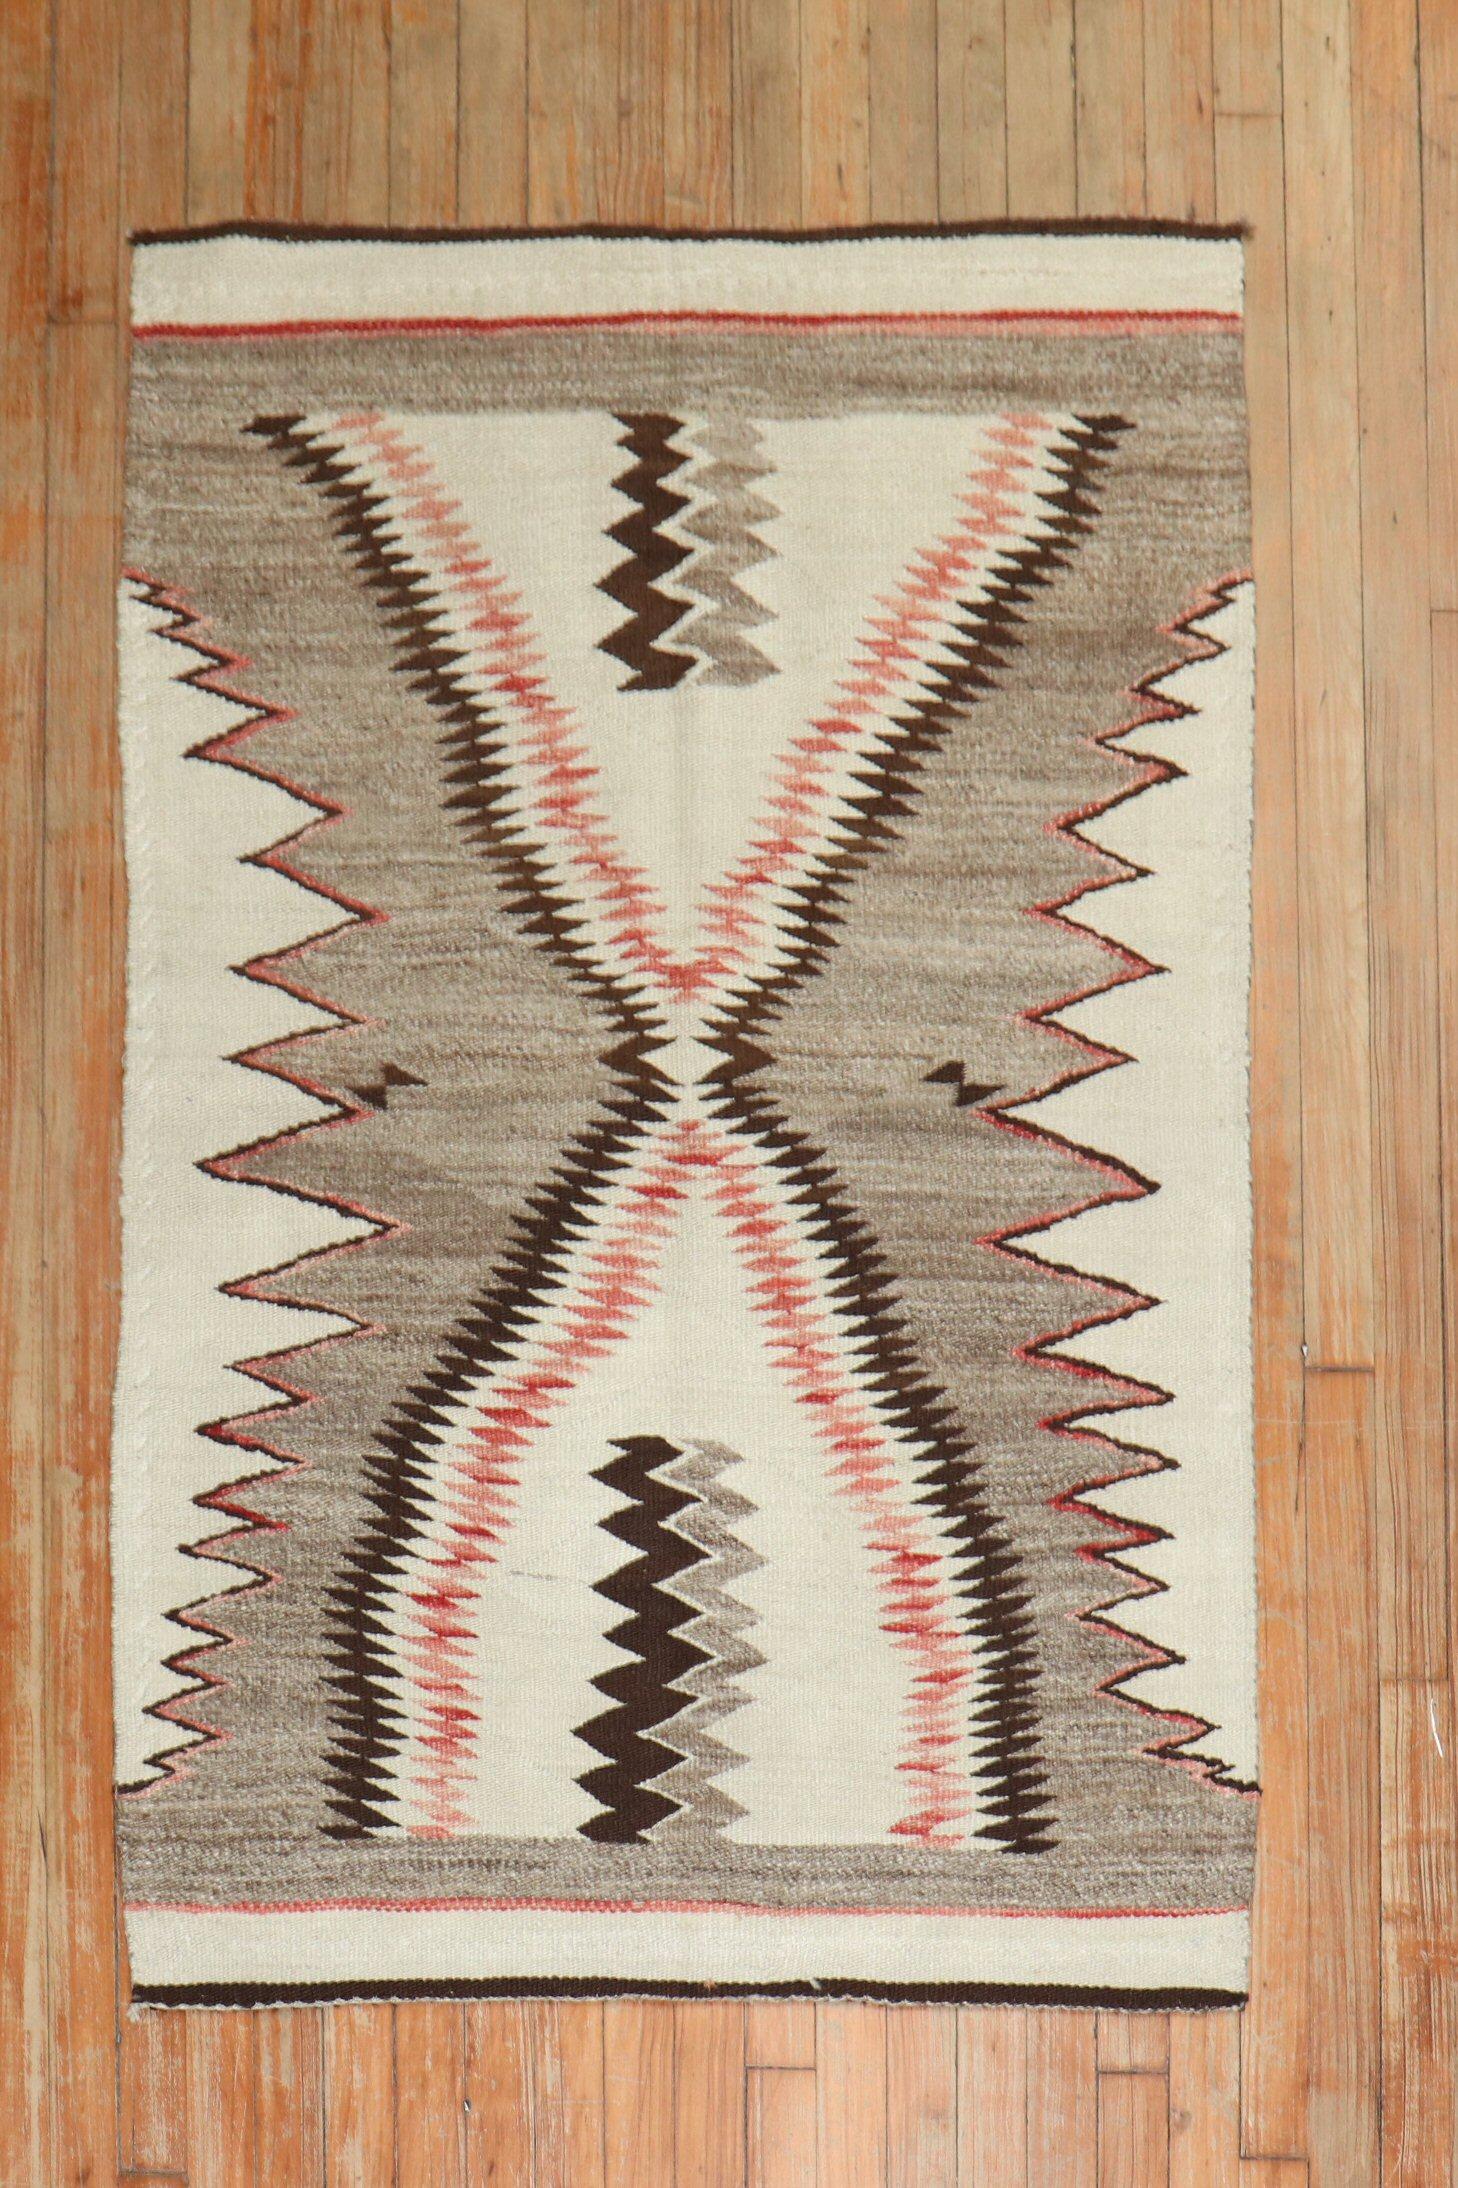 Ein hochdekorativer amerikanischer Navajo-Teppich aus dem frühen 20. Jahrhundert mit einem Muster, das einem Haifischzahn in Grau, Elfenbein und Koralle ähnelt

Maße: 3'1